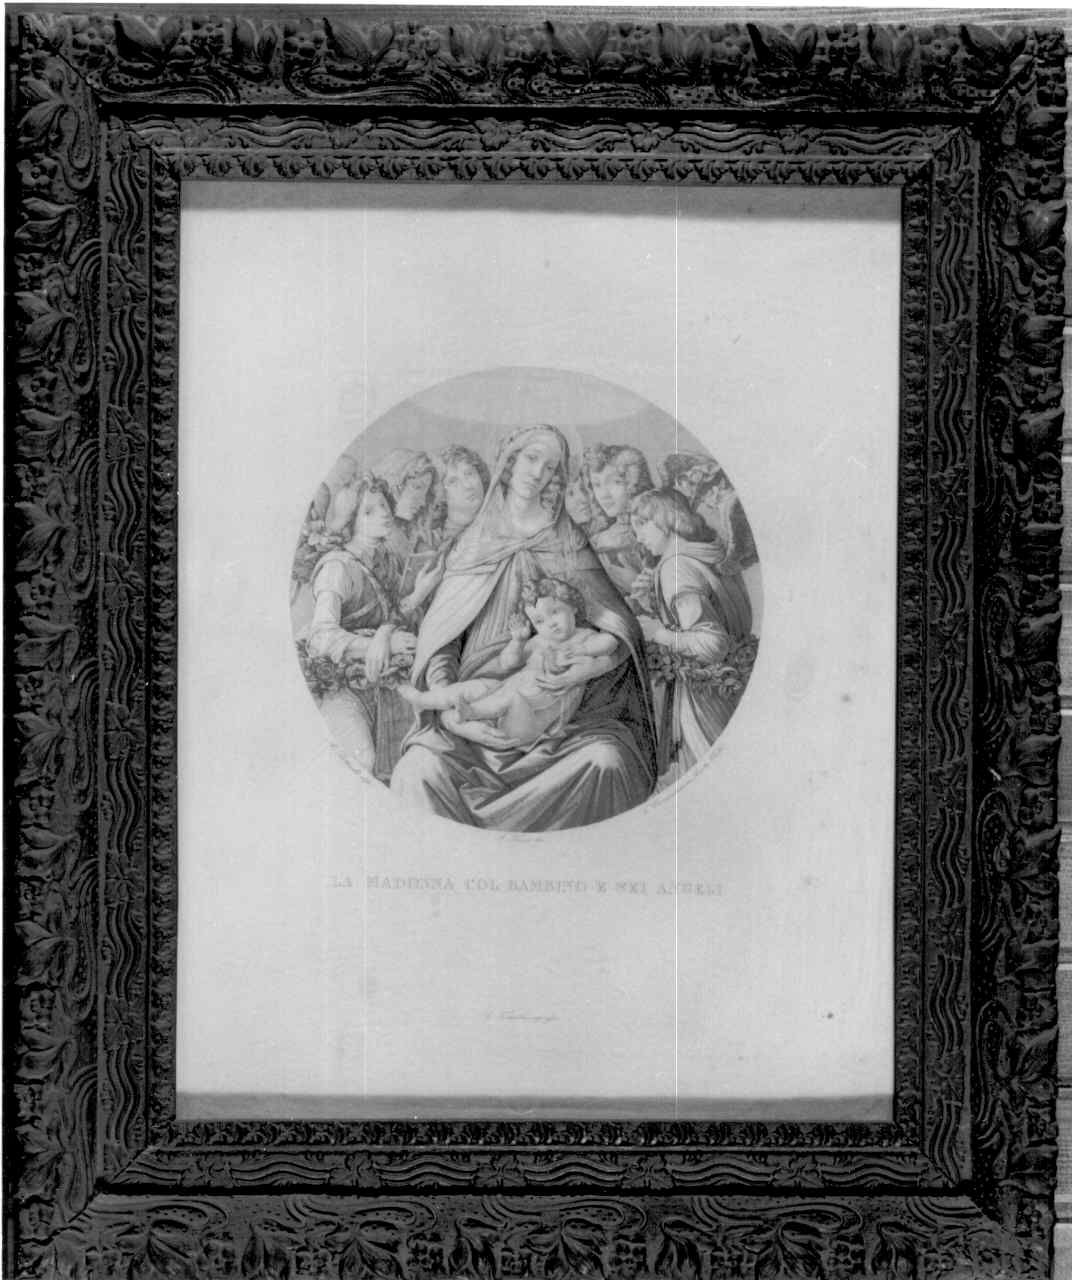 MADONNA CON BAMBINO E SEI ANGELI (stampa) di Cornacchia Giovanni, Filipepi Alessandro detto Botticelli Sandro (metà sec. XIX)